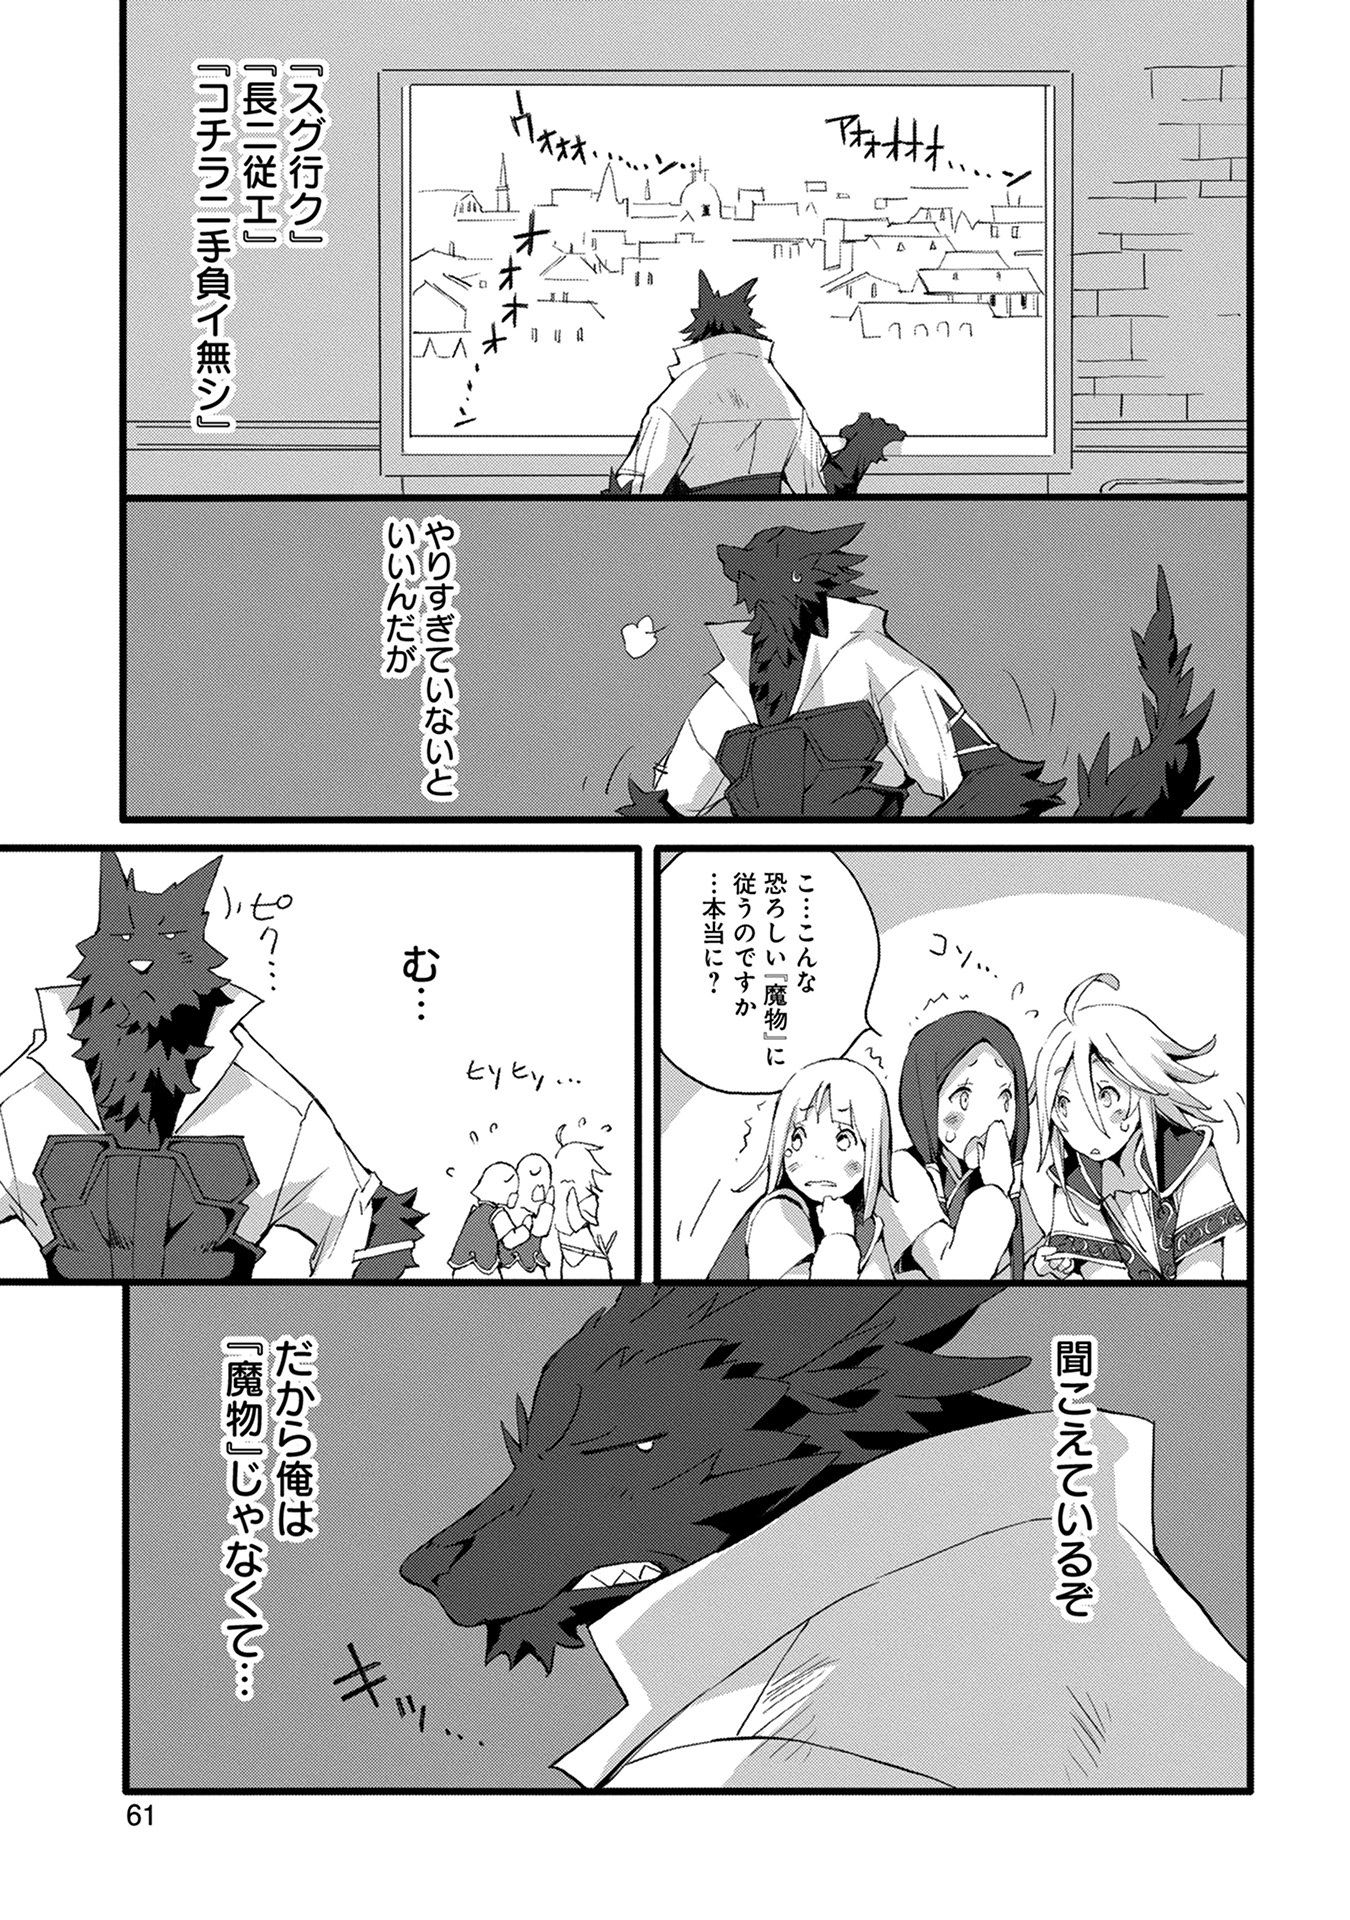 人狼への転生、魔王の副官 ~はじまりの章~ Chapter 2 - Page 17